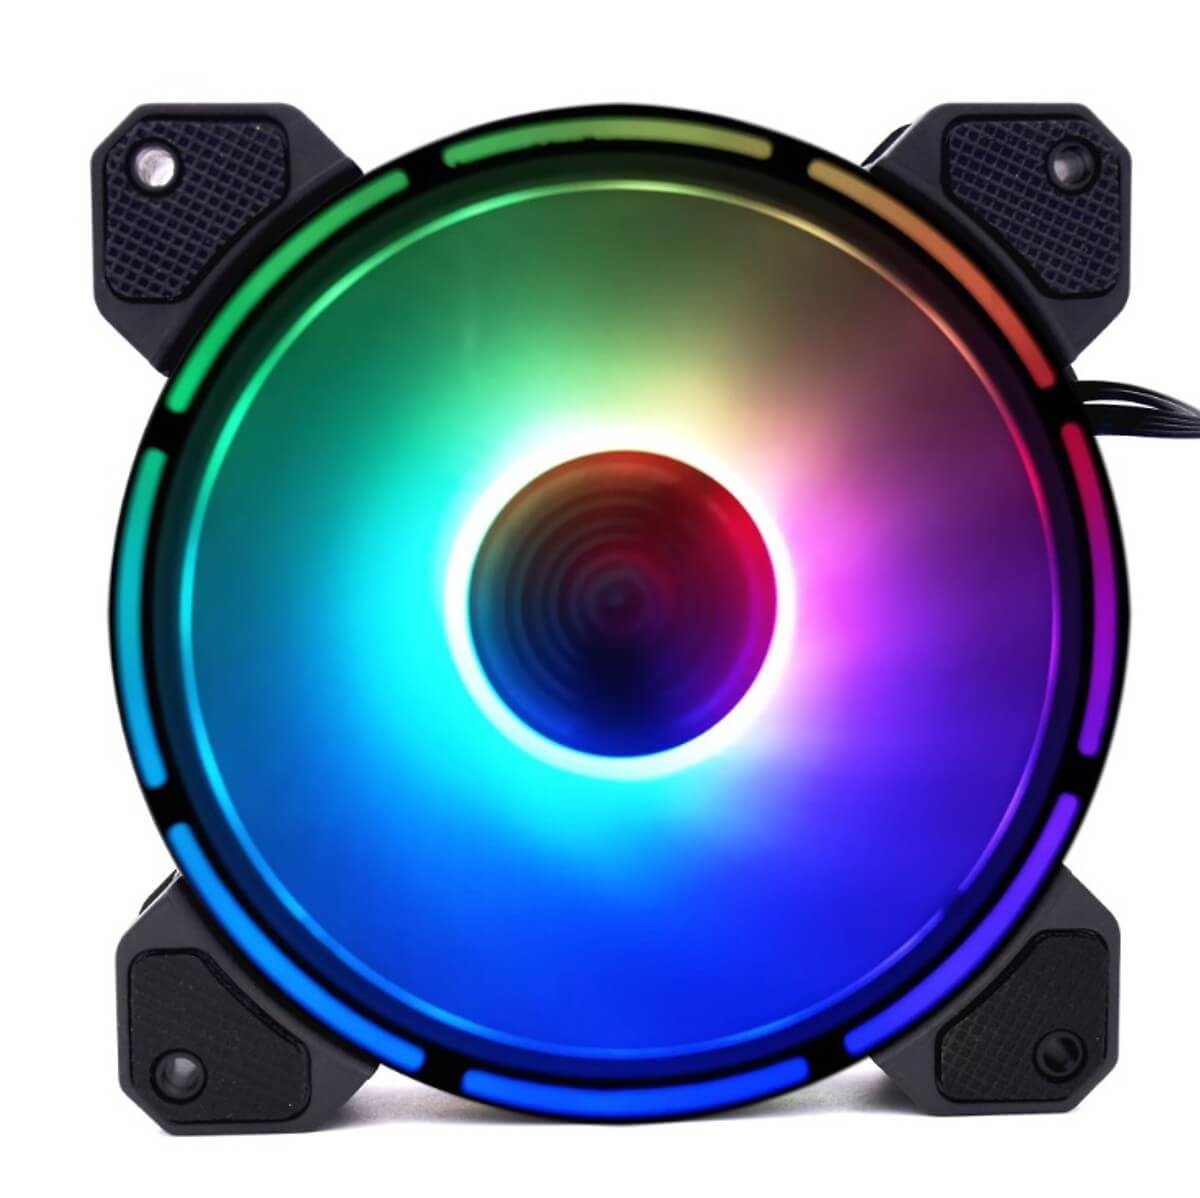 Bộ 5 Quạt Tản Nhiệt RGB Coolmoon V9 kèm 1 hub + 1 remote, Bảo hành 3 tháng